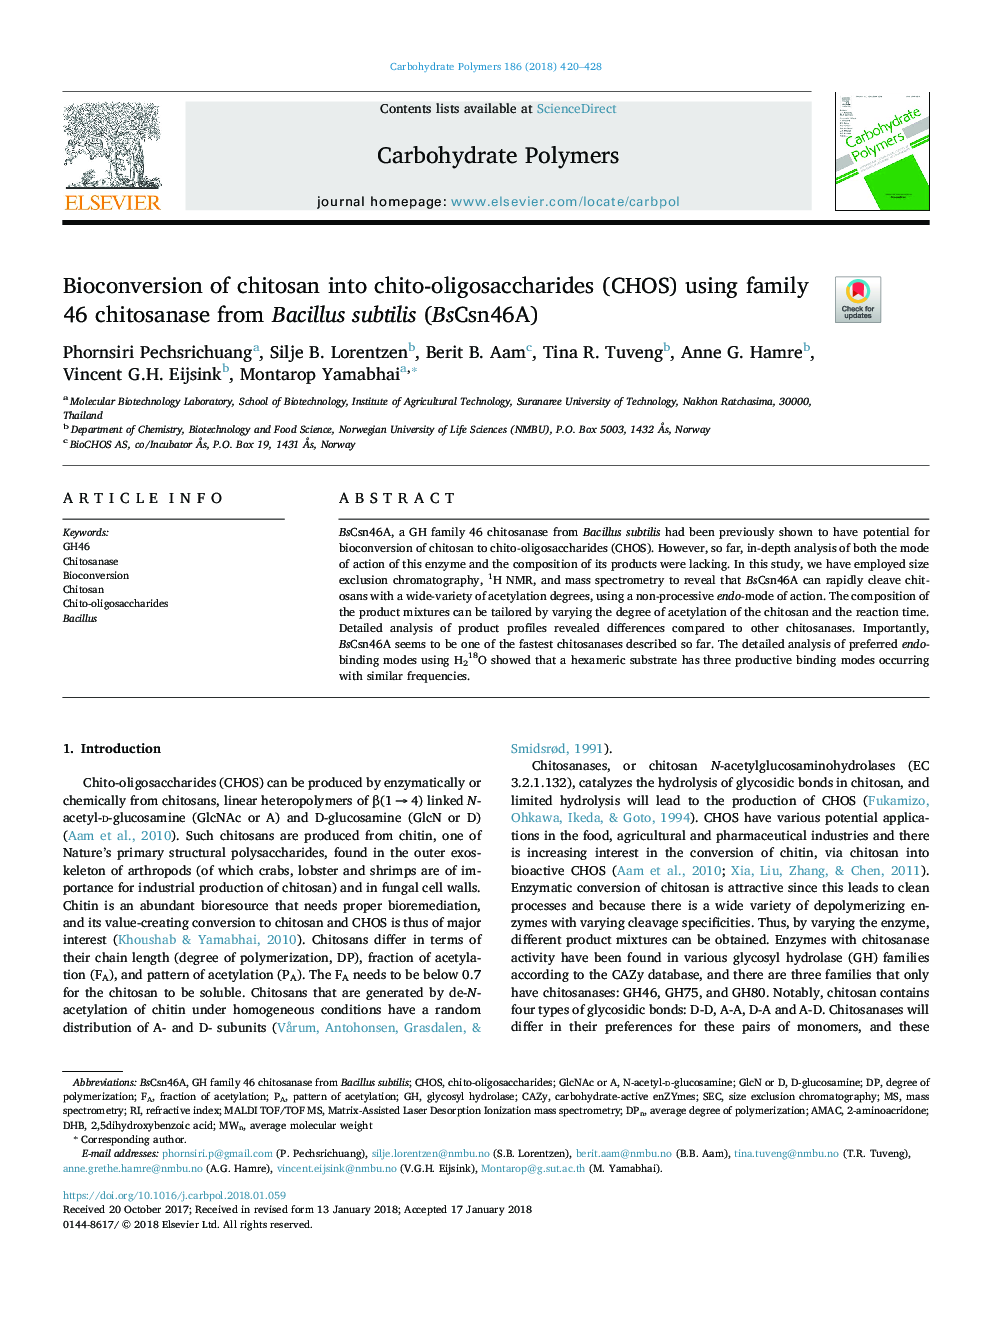 Bioconversion of chitosan into chito-oligosaccharides (CHOS) using family 46 chitosanase from Bacillus subtilis (BsCsn46A)